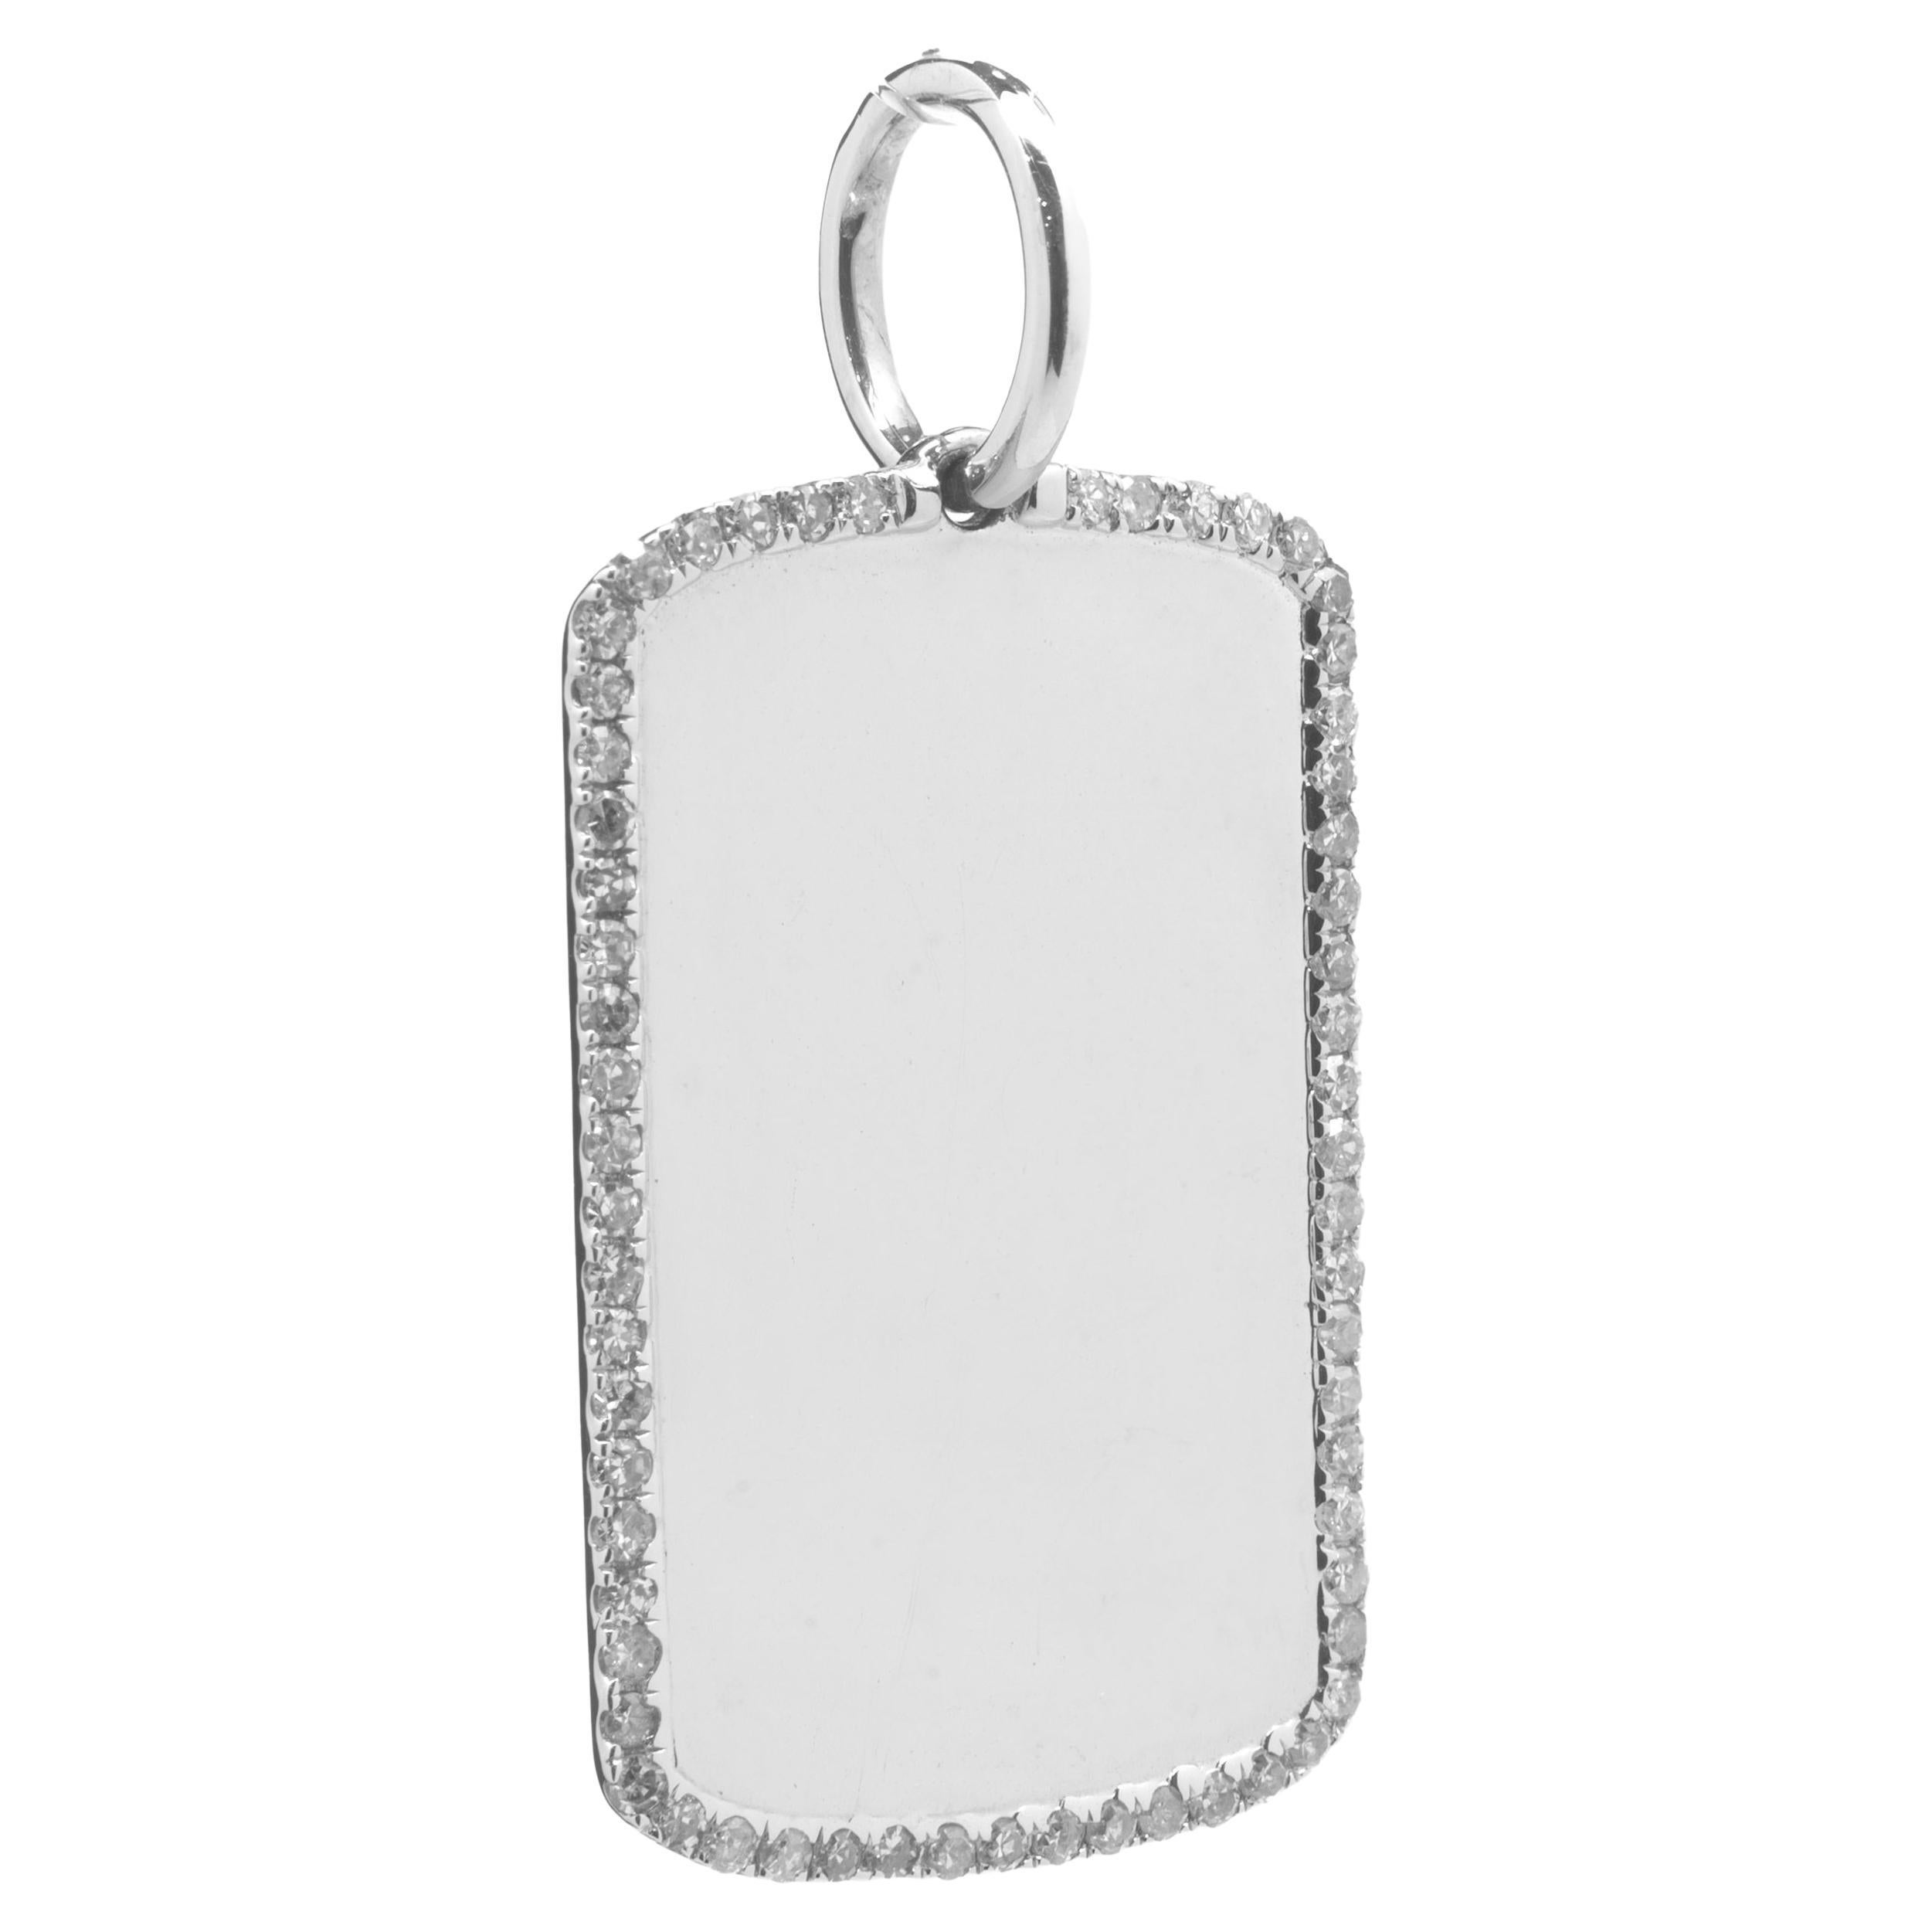 Diamond Dog Tag - 36 For Sale on 1stDibs | diamond dog tag pendant 